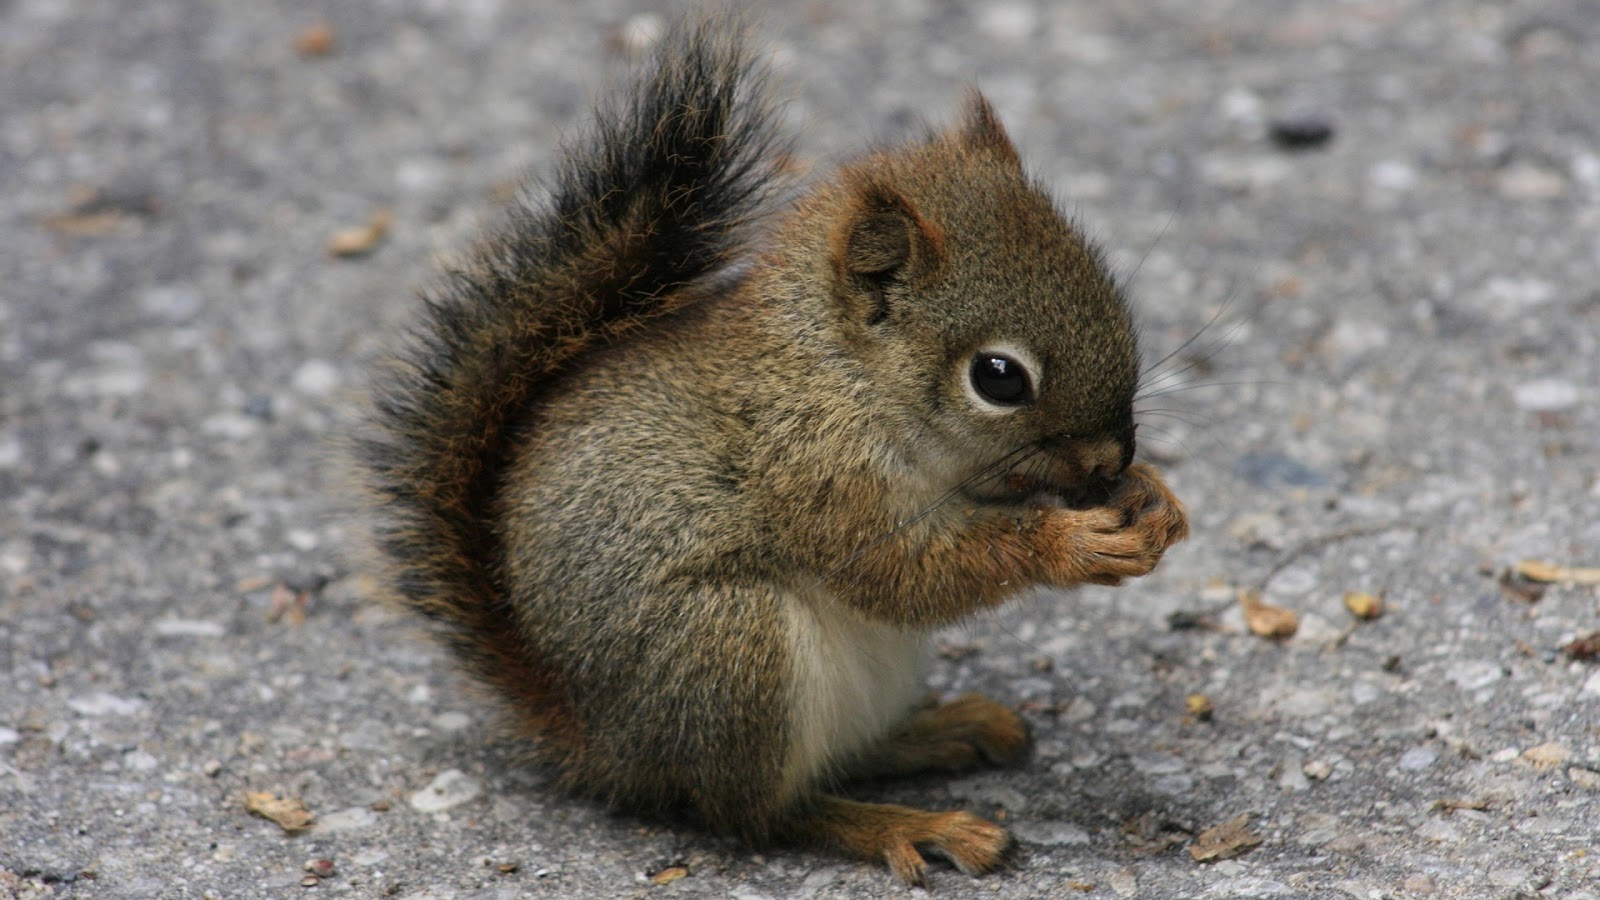 Cute squirrel Photos